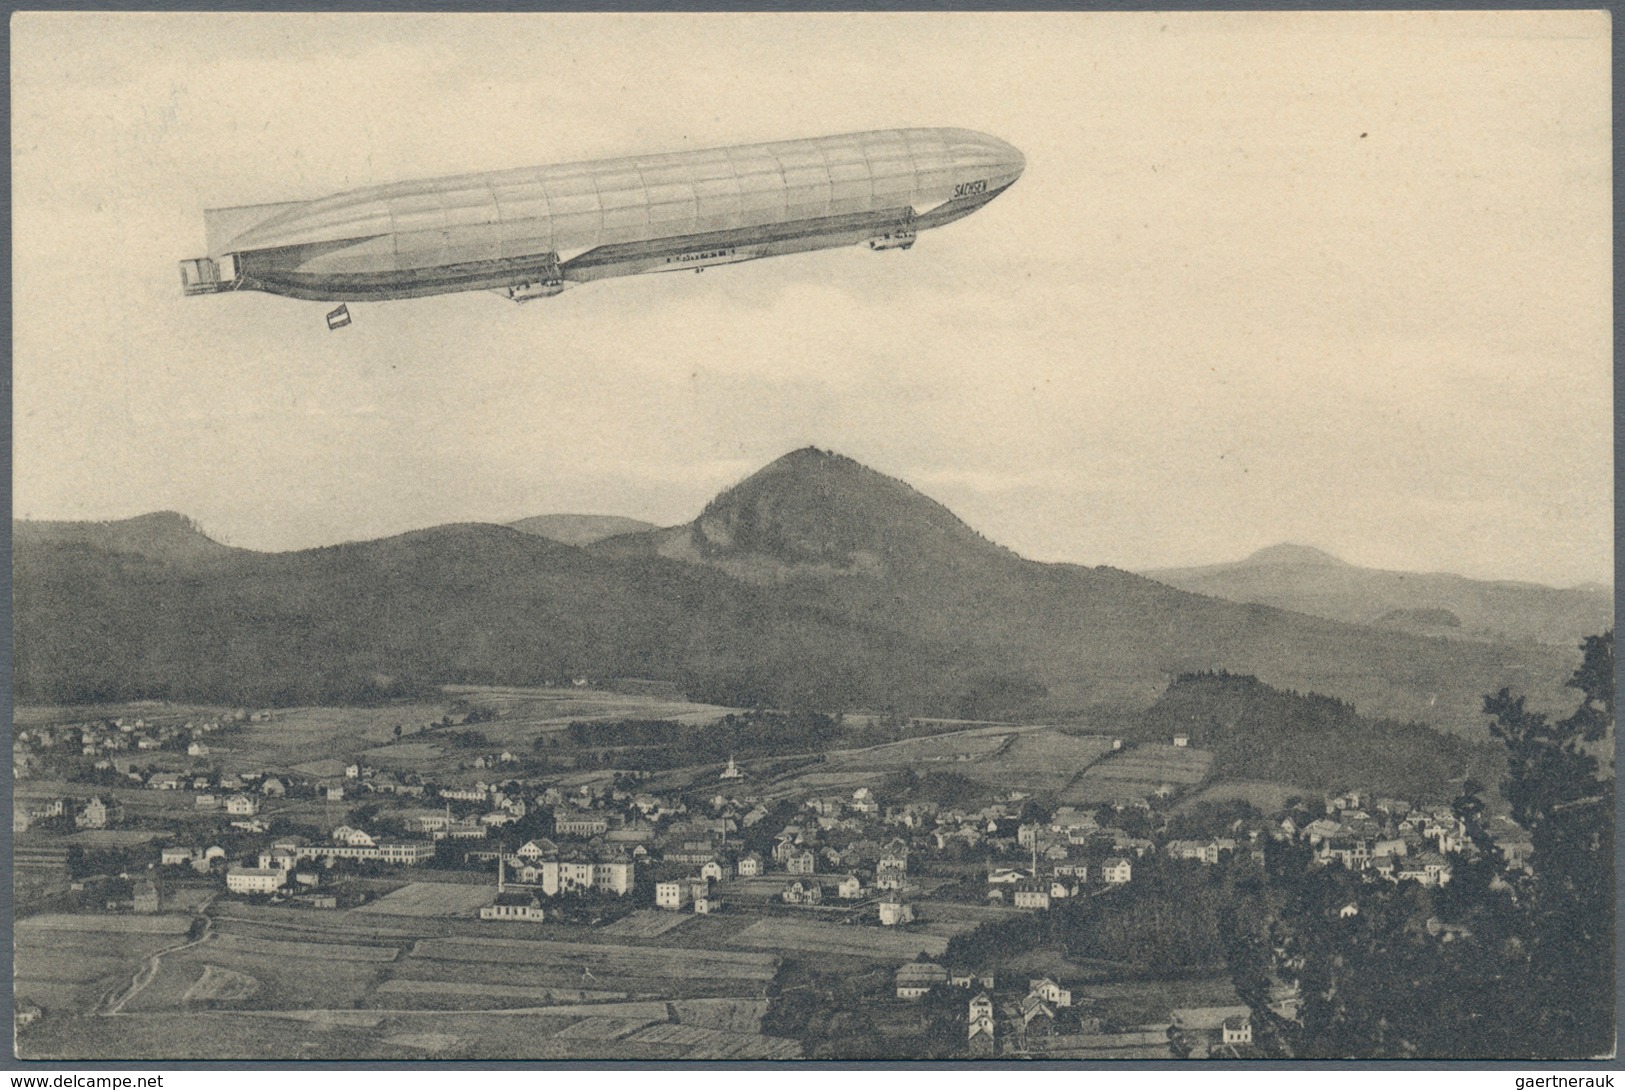 Österreich - Zeppelinpost: 1913, LZ 17 SACHSEN, 6 verschiedene 5 H Franz-Josef Privat-GSK "Landungsp